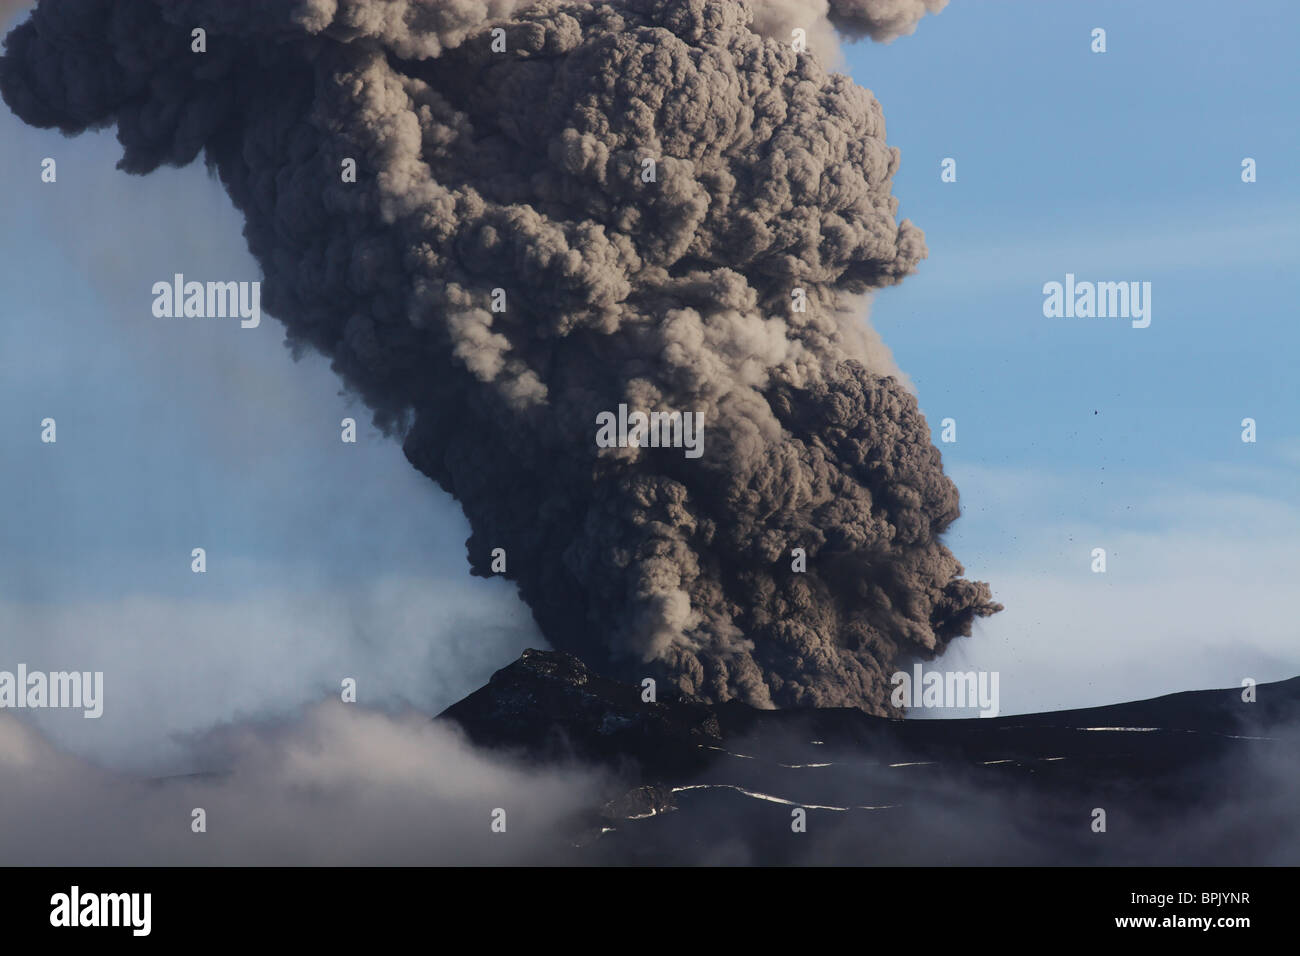 May 7, 2010 - Eyjafjallajökull eruption, Iceland. Stock Photo